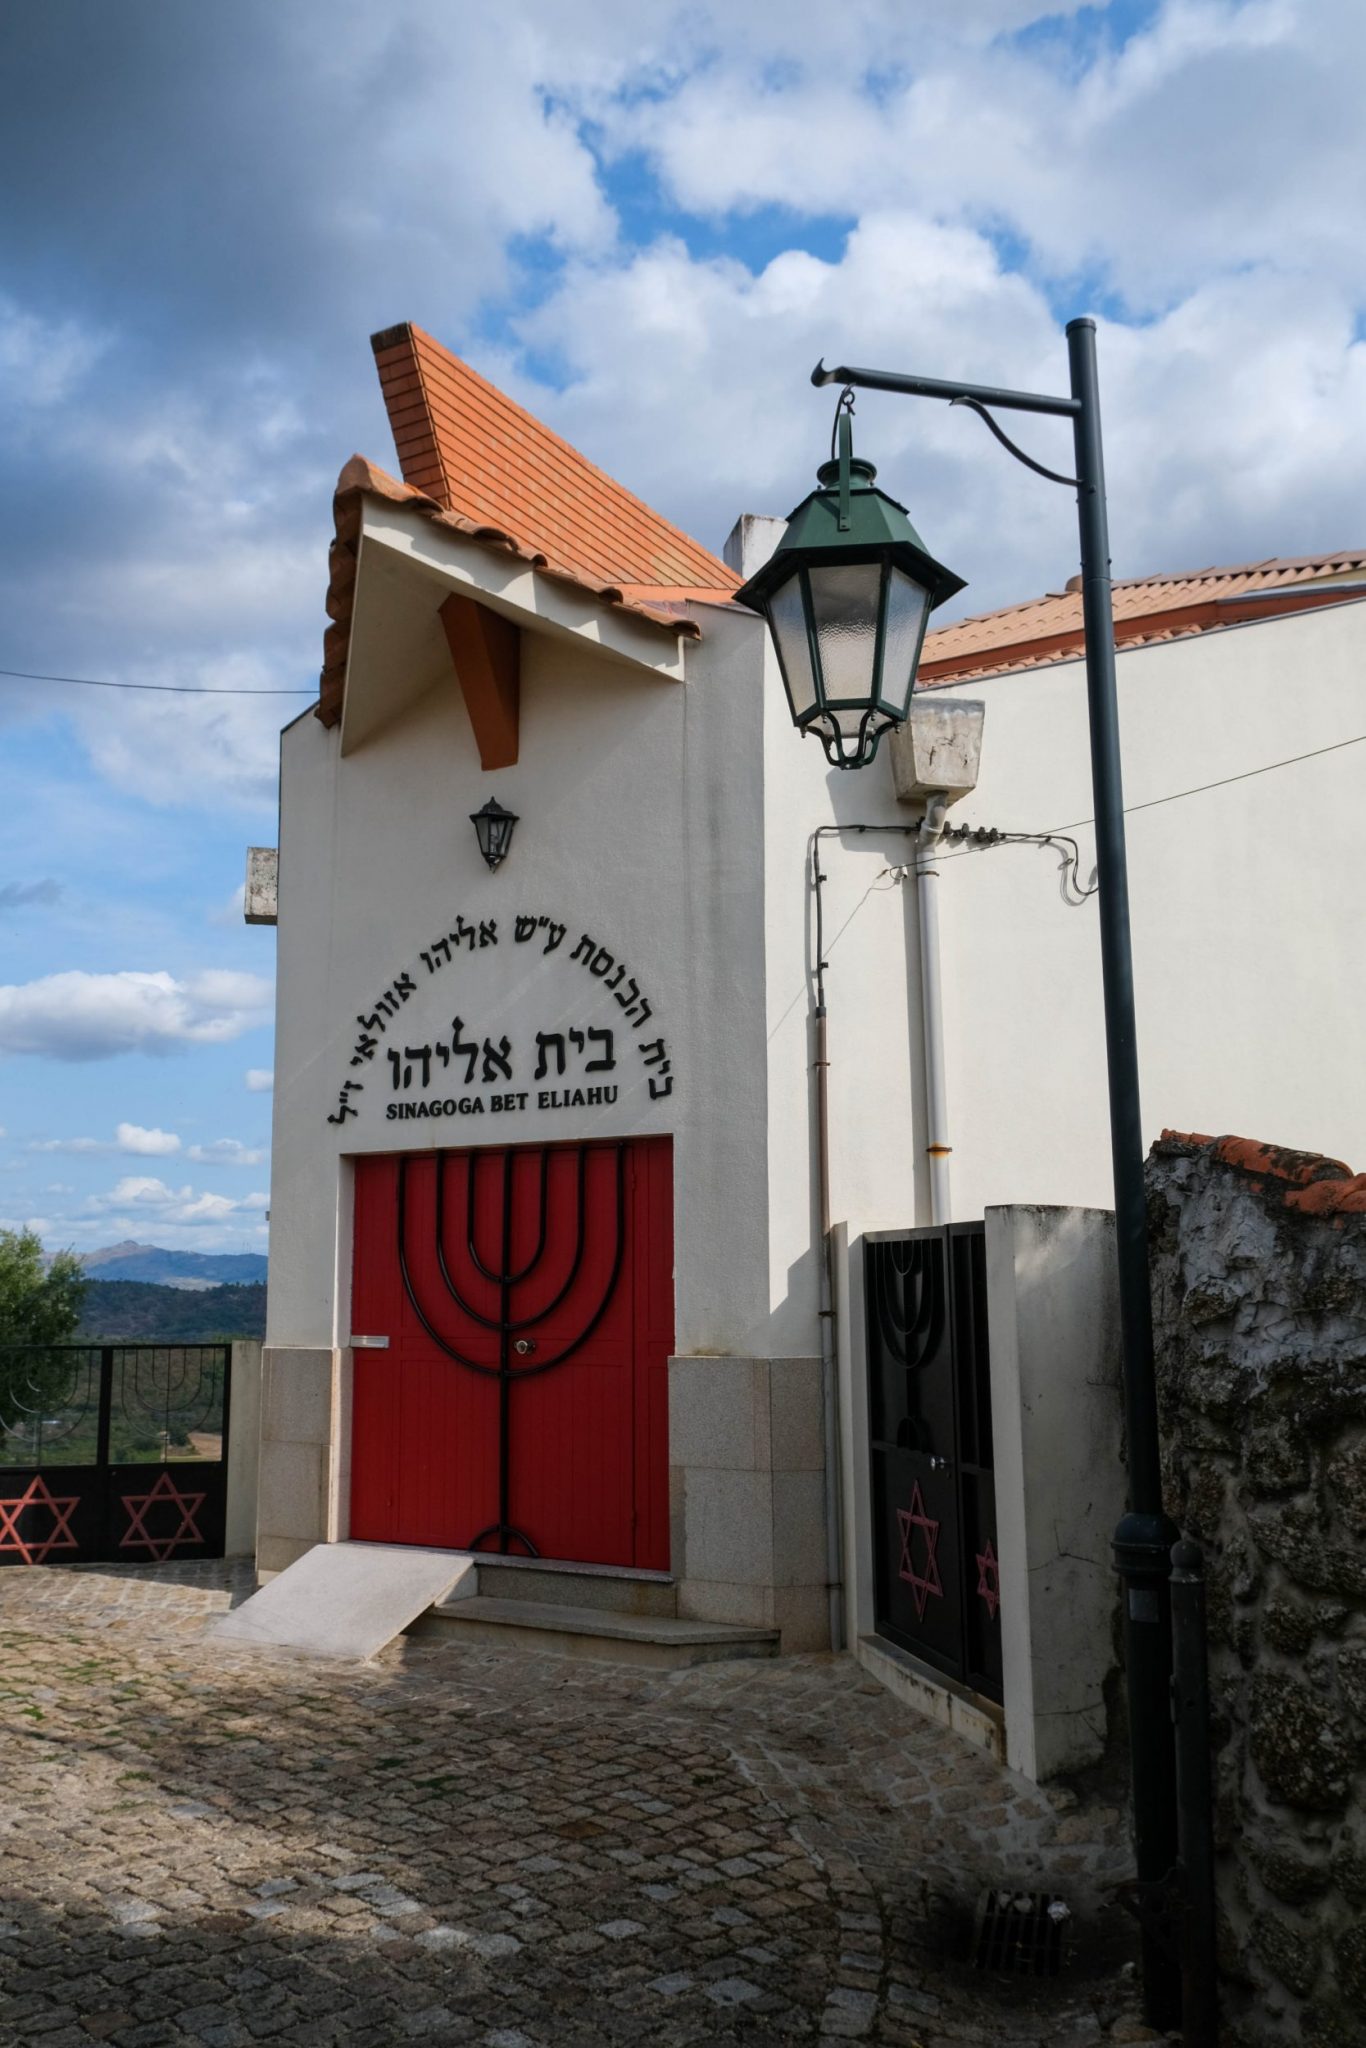 Foto della sinagoga a Belmonte, nella Serra da Estrela, Portogallo.